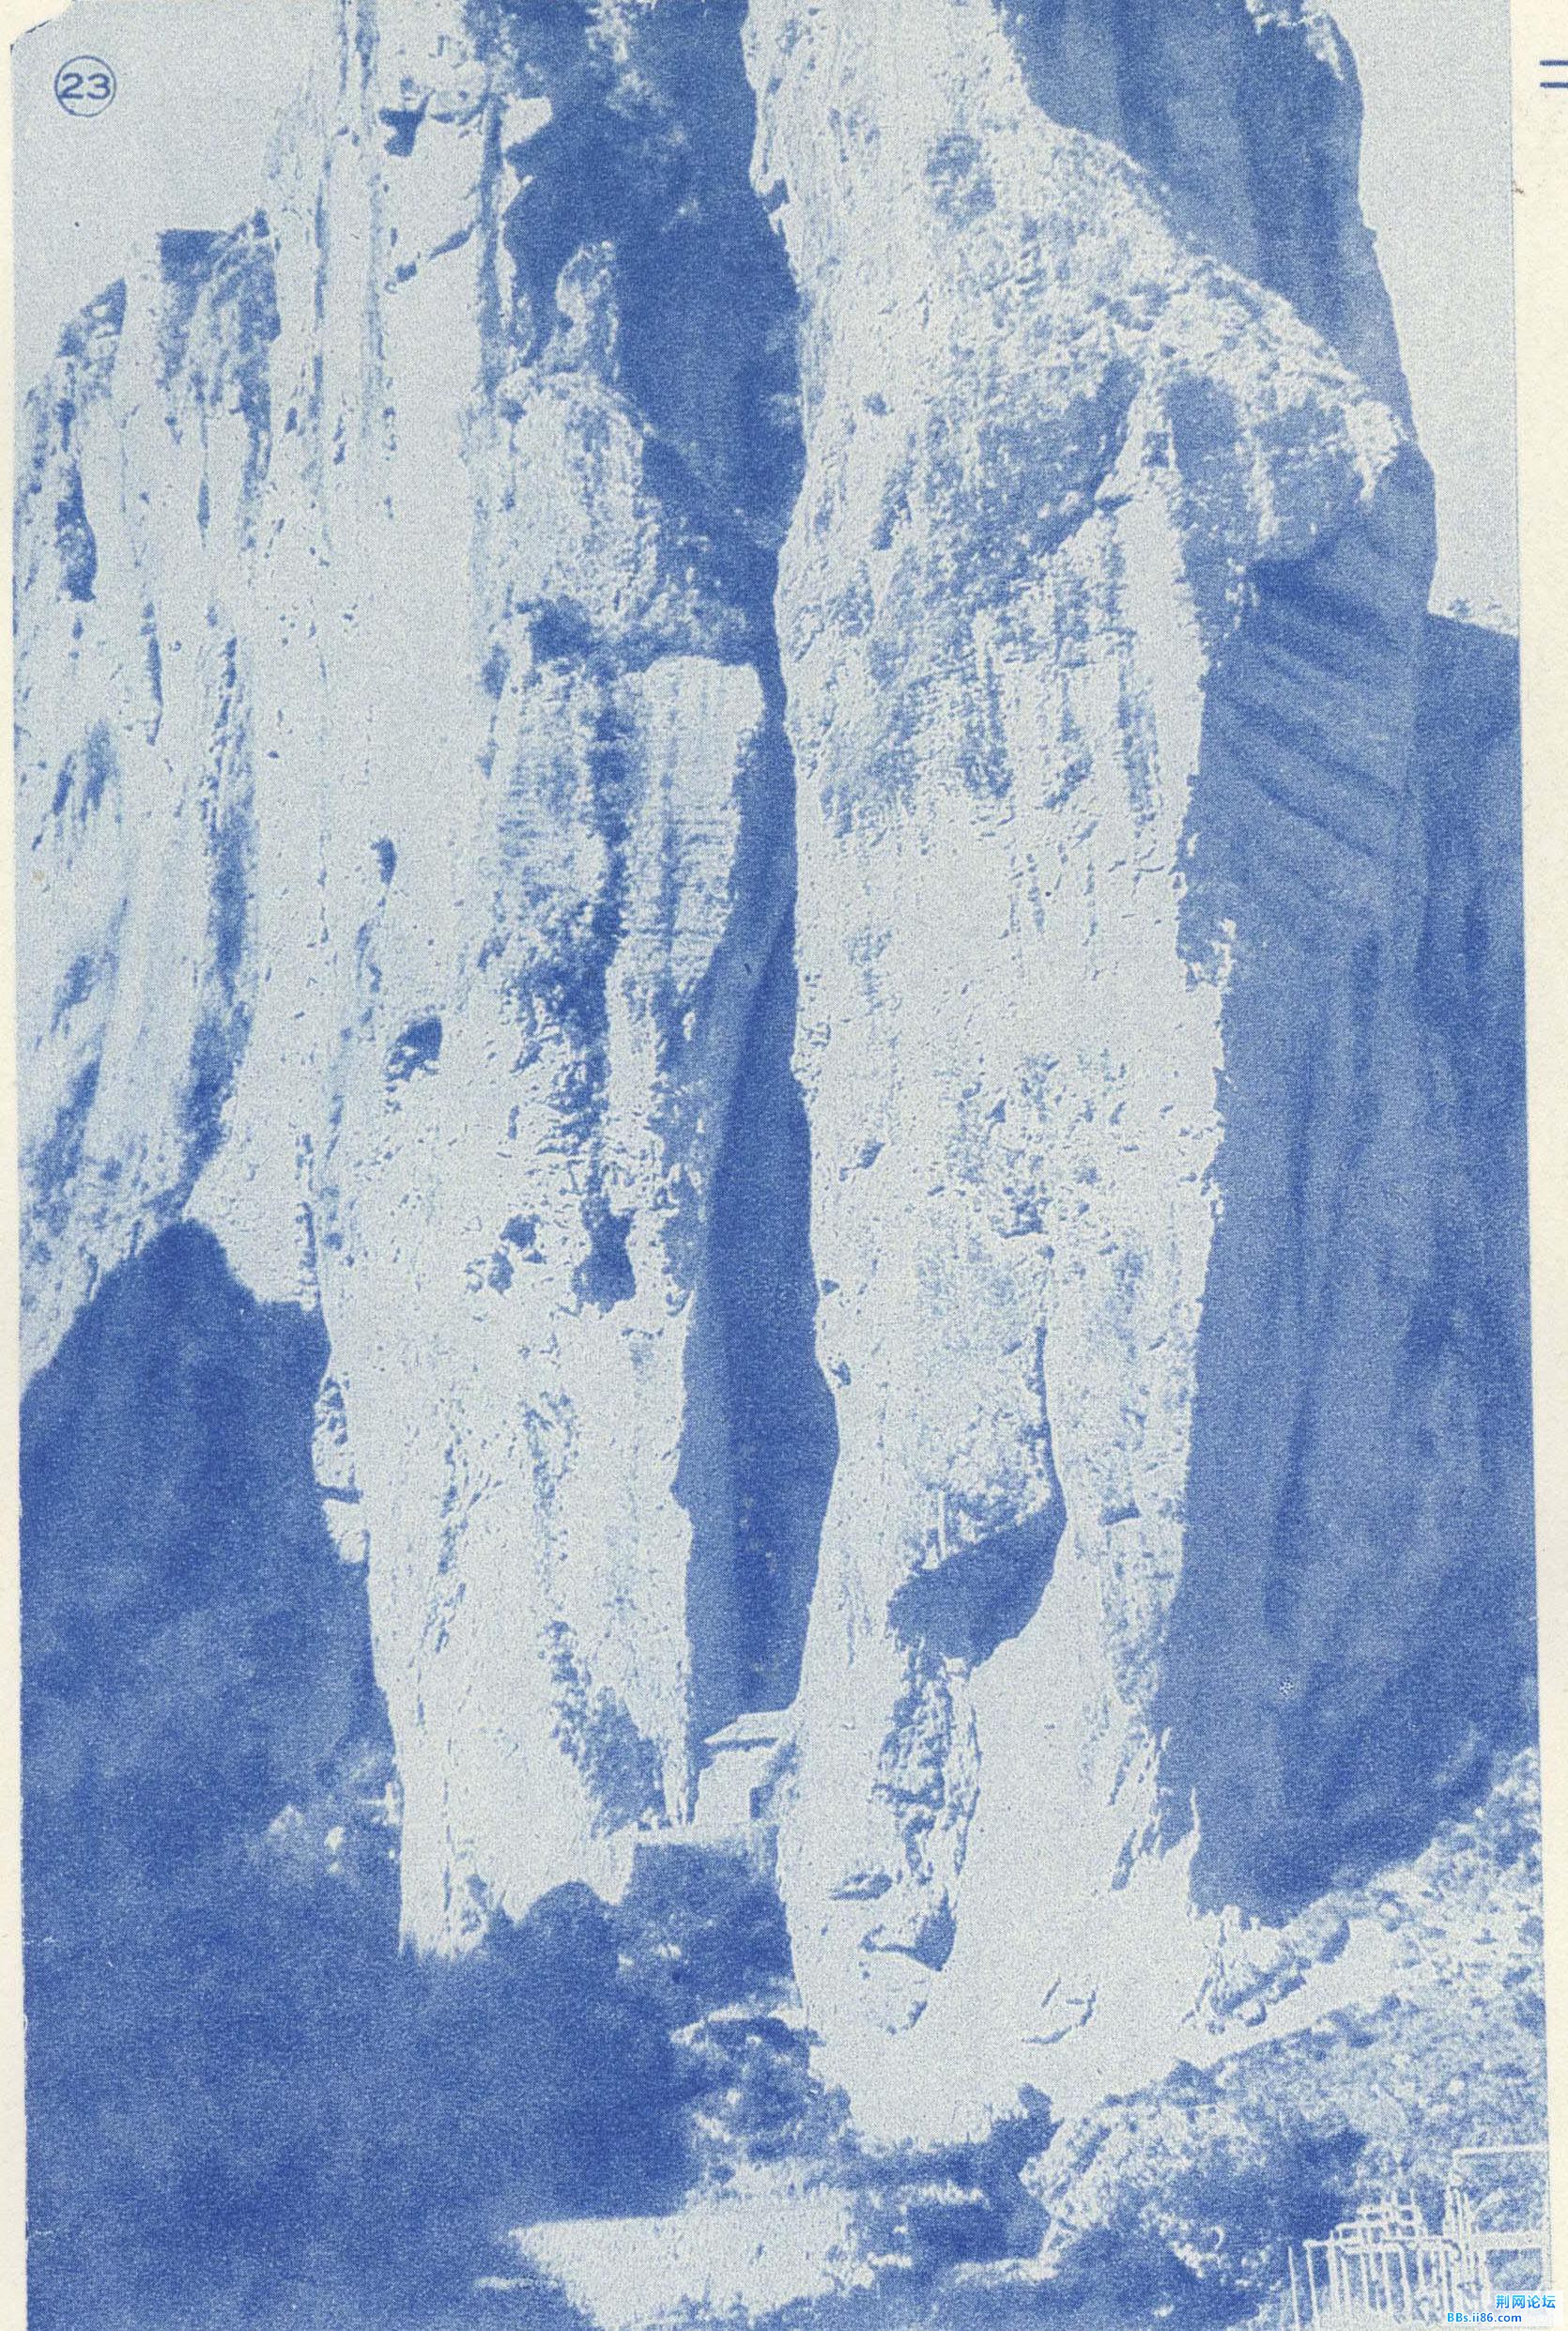 雁荡山的秋月[J].良友画报(影印本),1934,(第100期).JPG